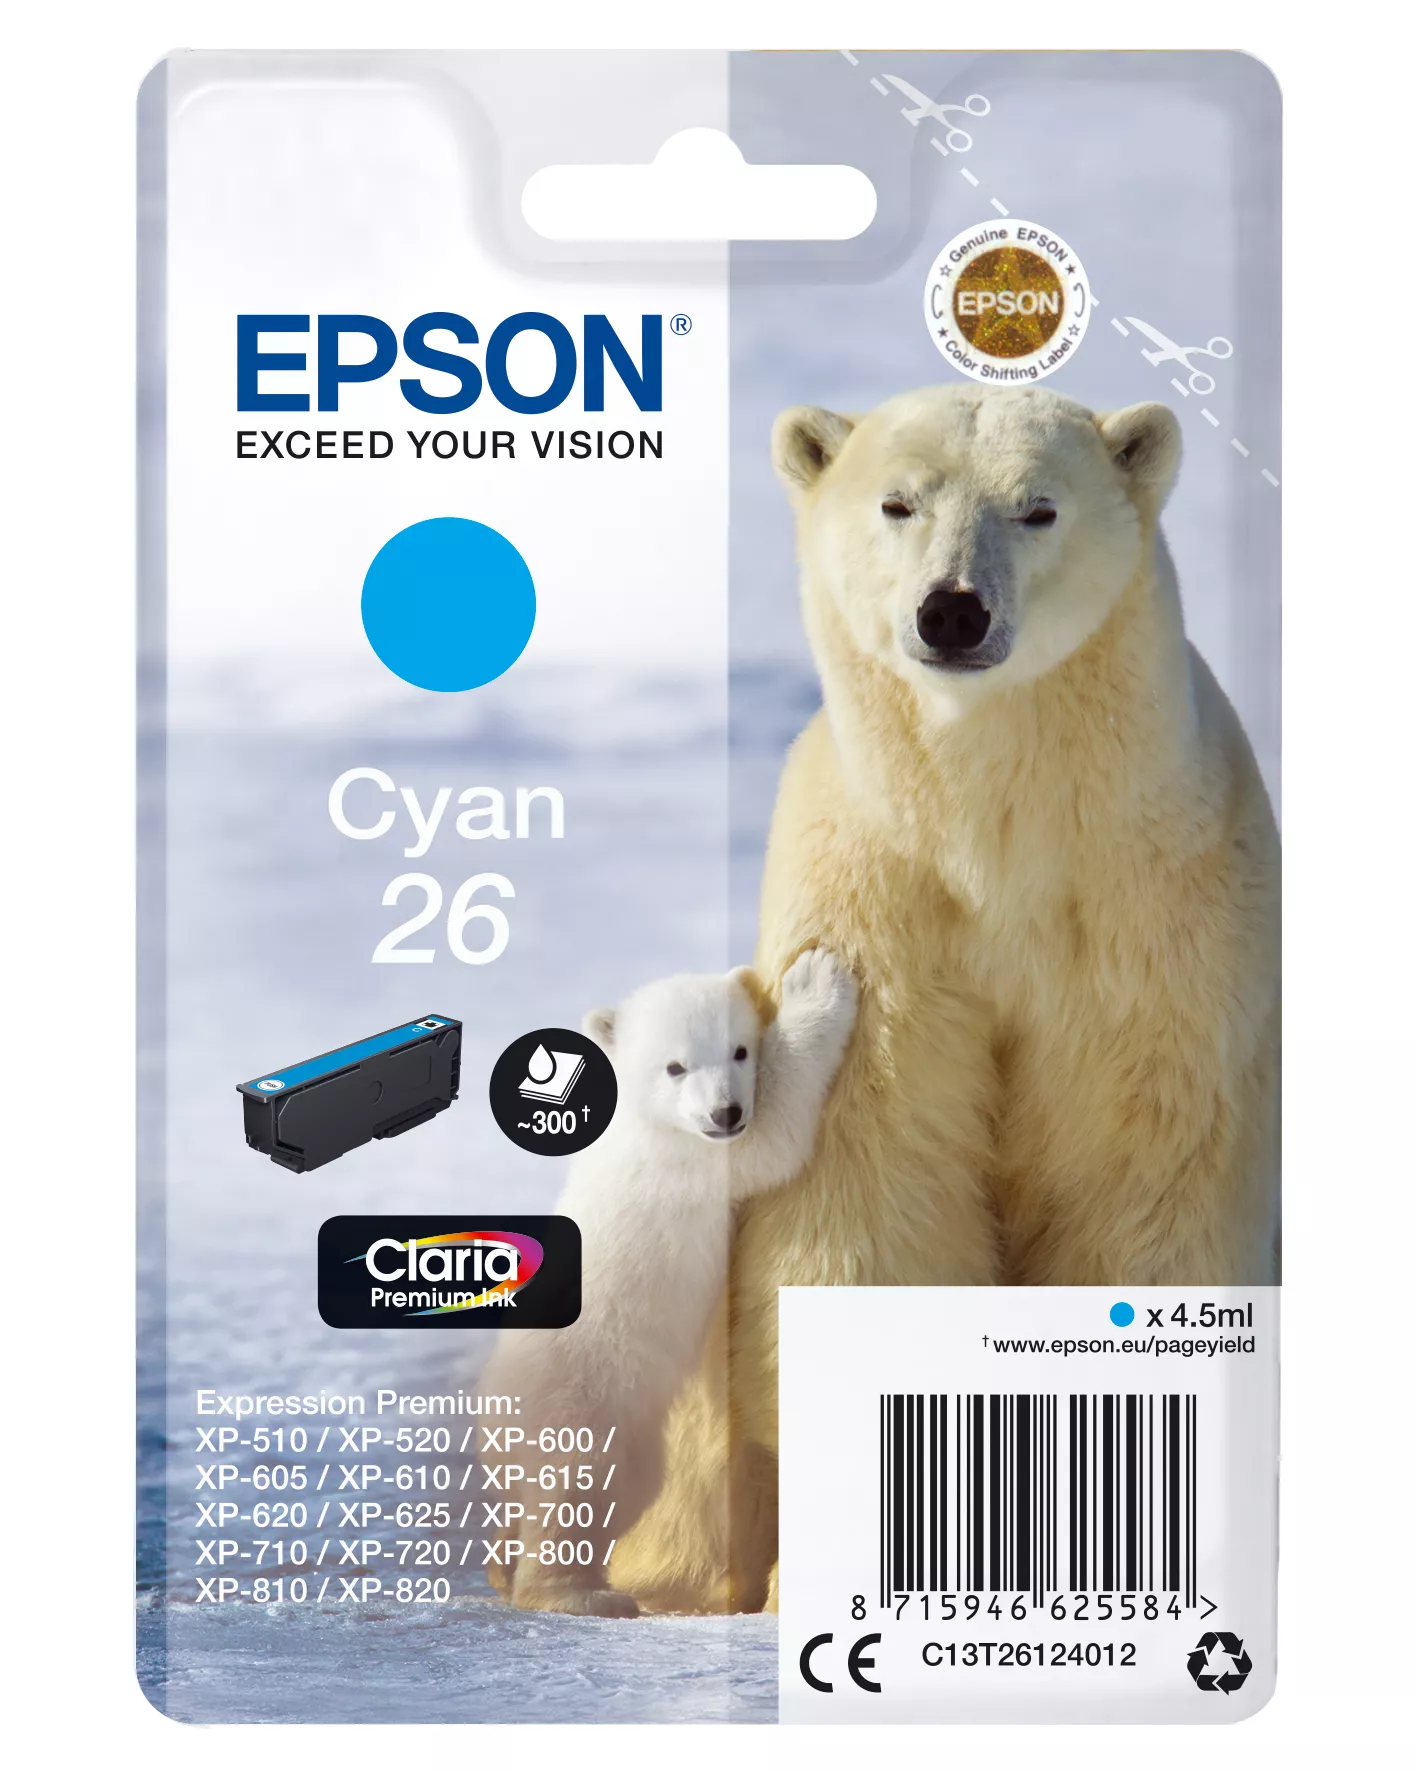 Vente EPSON 26 cartouche encre cyan capacité standard 4.5ml 300 au meilleur prix